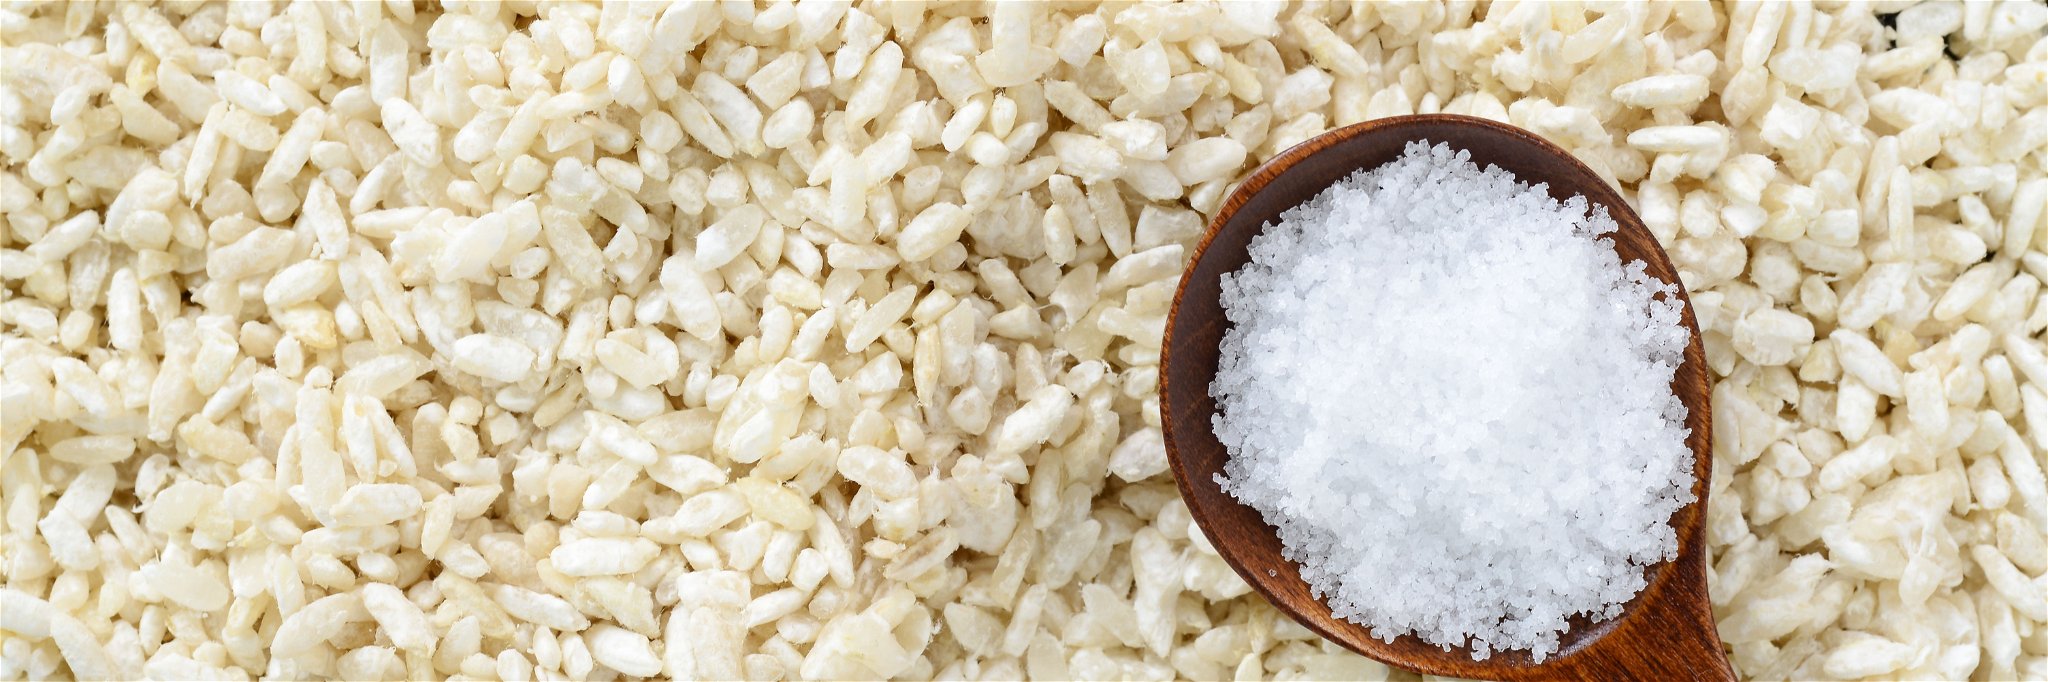 Der Koji-Pilz wächst auf Getreide - am liebsten auf Reis.